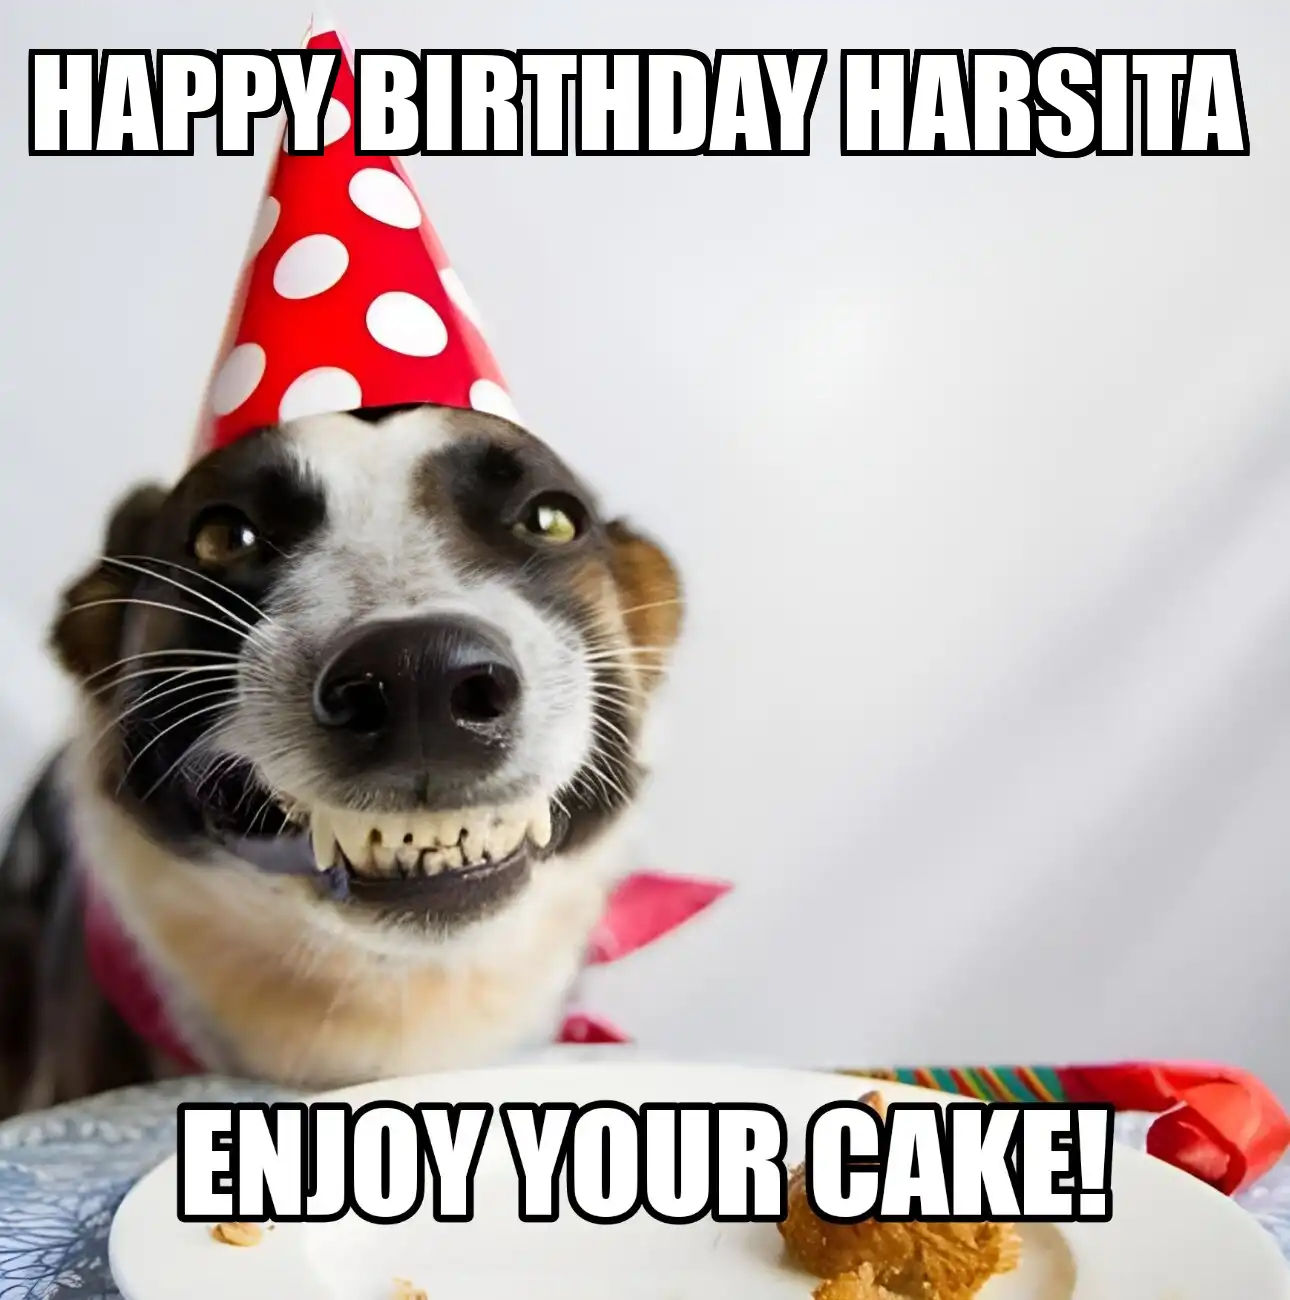 Happy Birthday Harsita Enjoy Your Cake Dog Meme